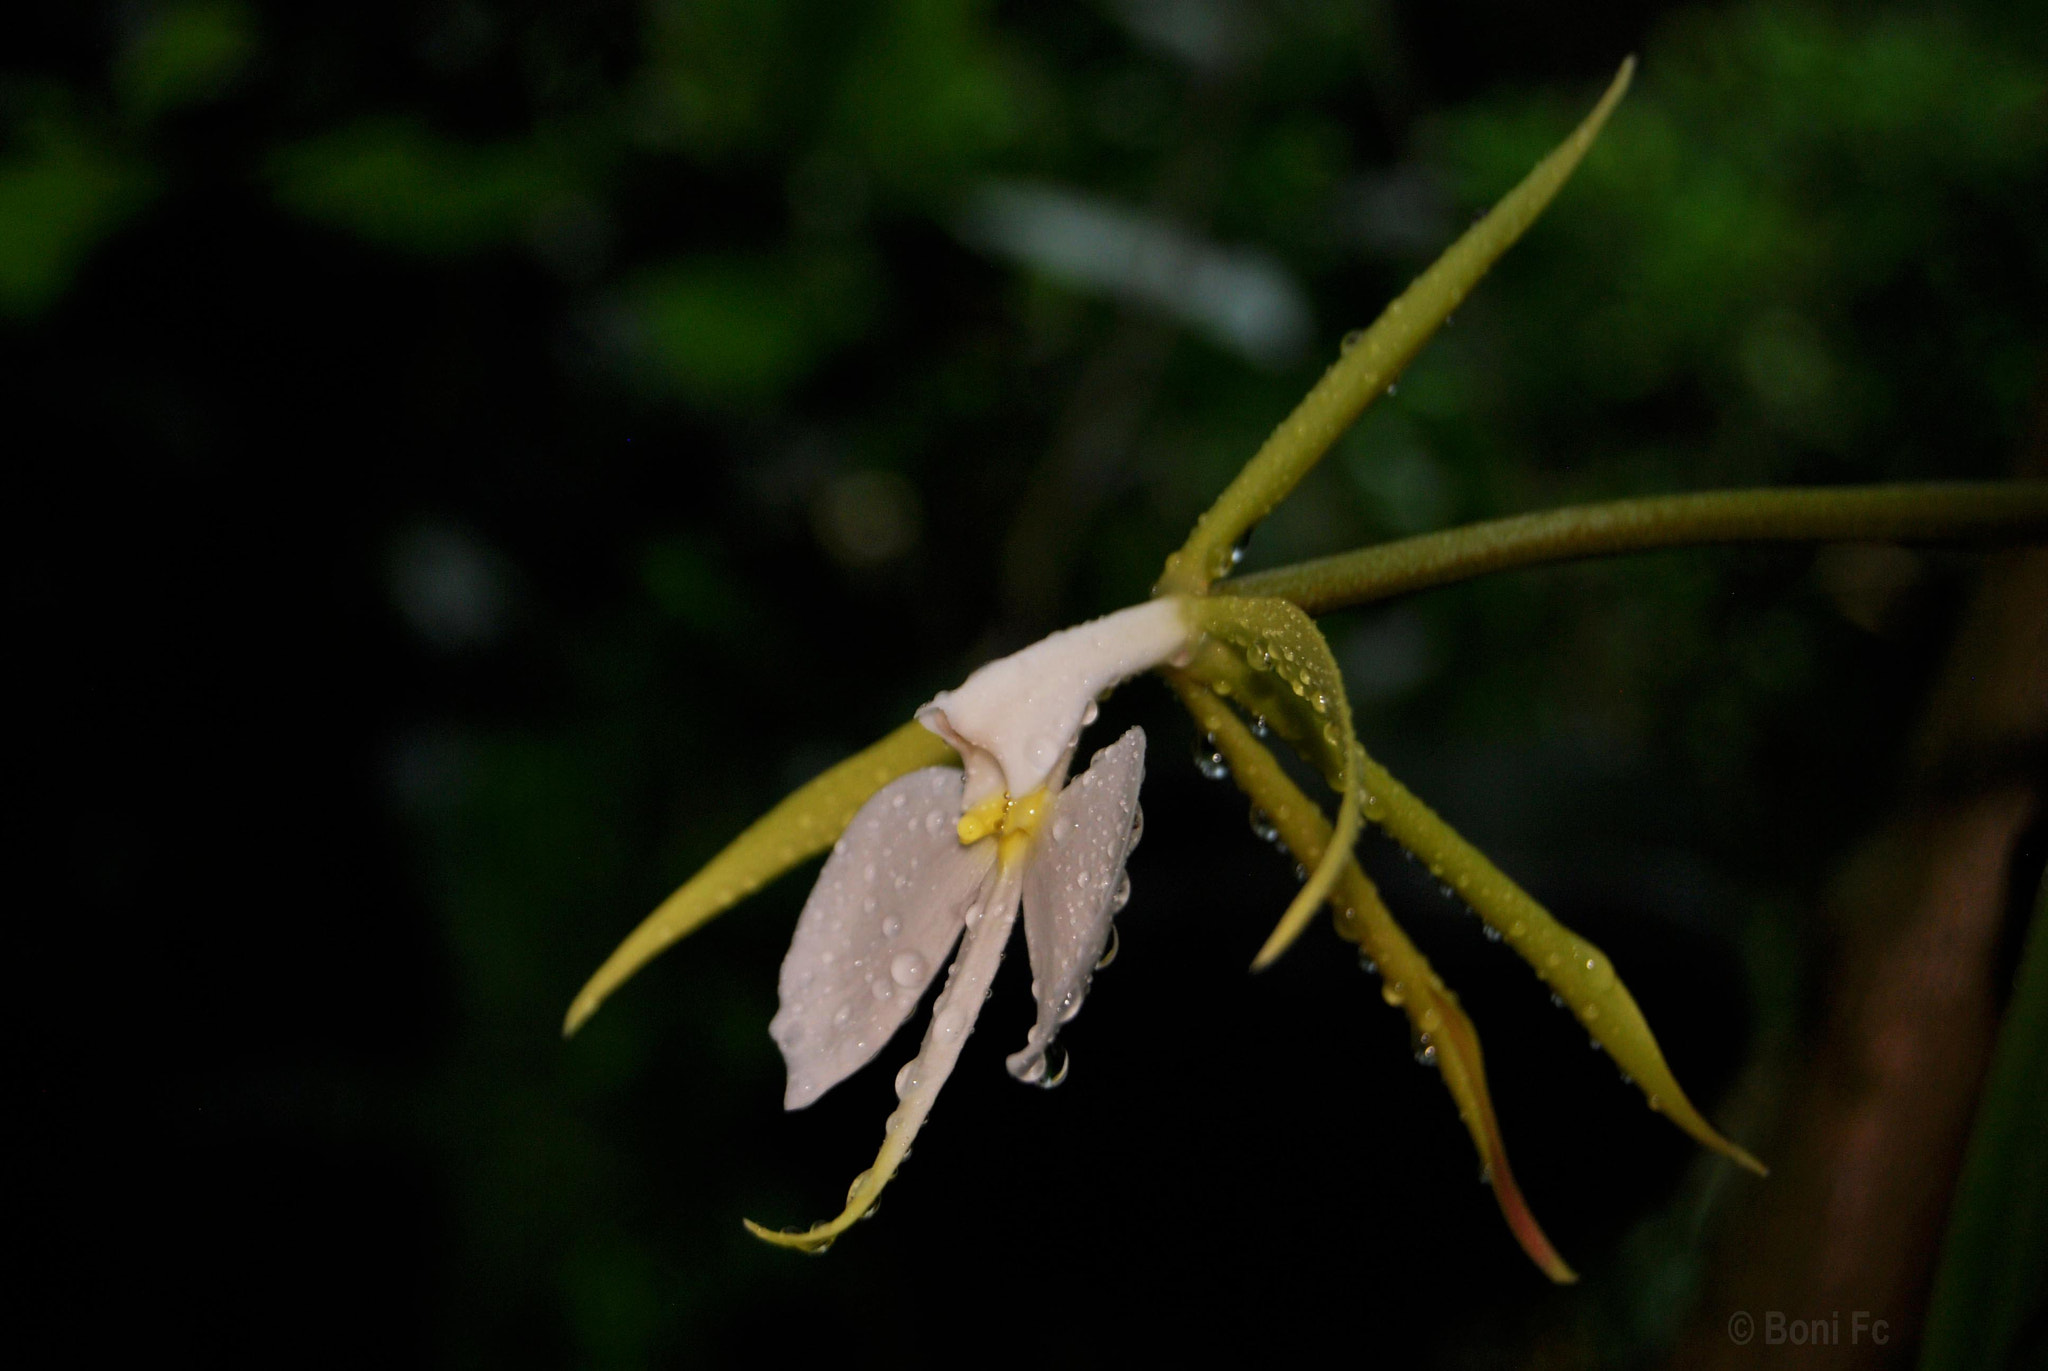 Nikon D60 + AF-S DX Zoom-Nikkor 18-55mm f/3.5-5.6G ED sample photo. Epidendrum parkinsonianum photography